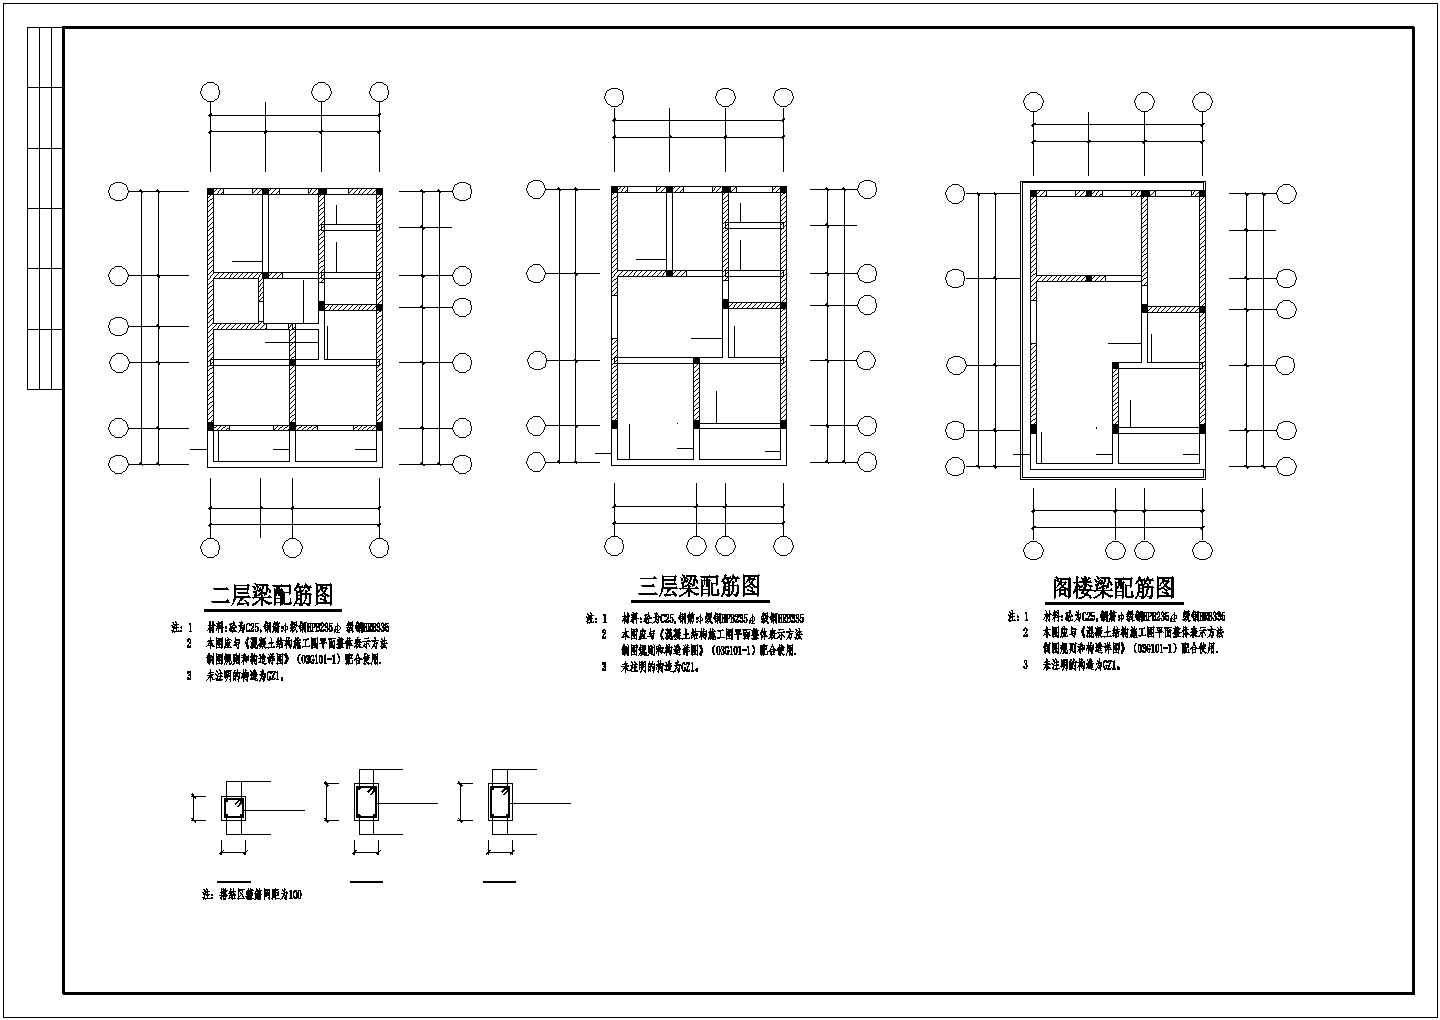 【设计院出品】3层砖混民房结构设计方案CAD图纸